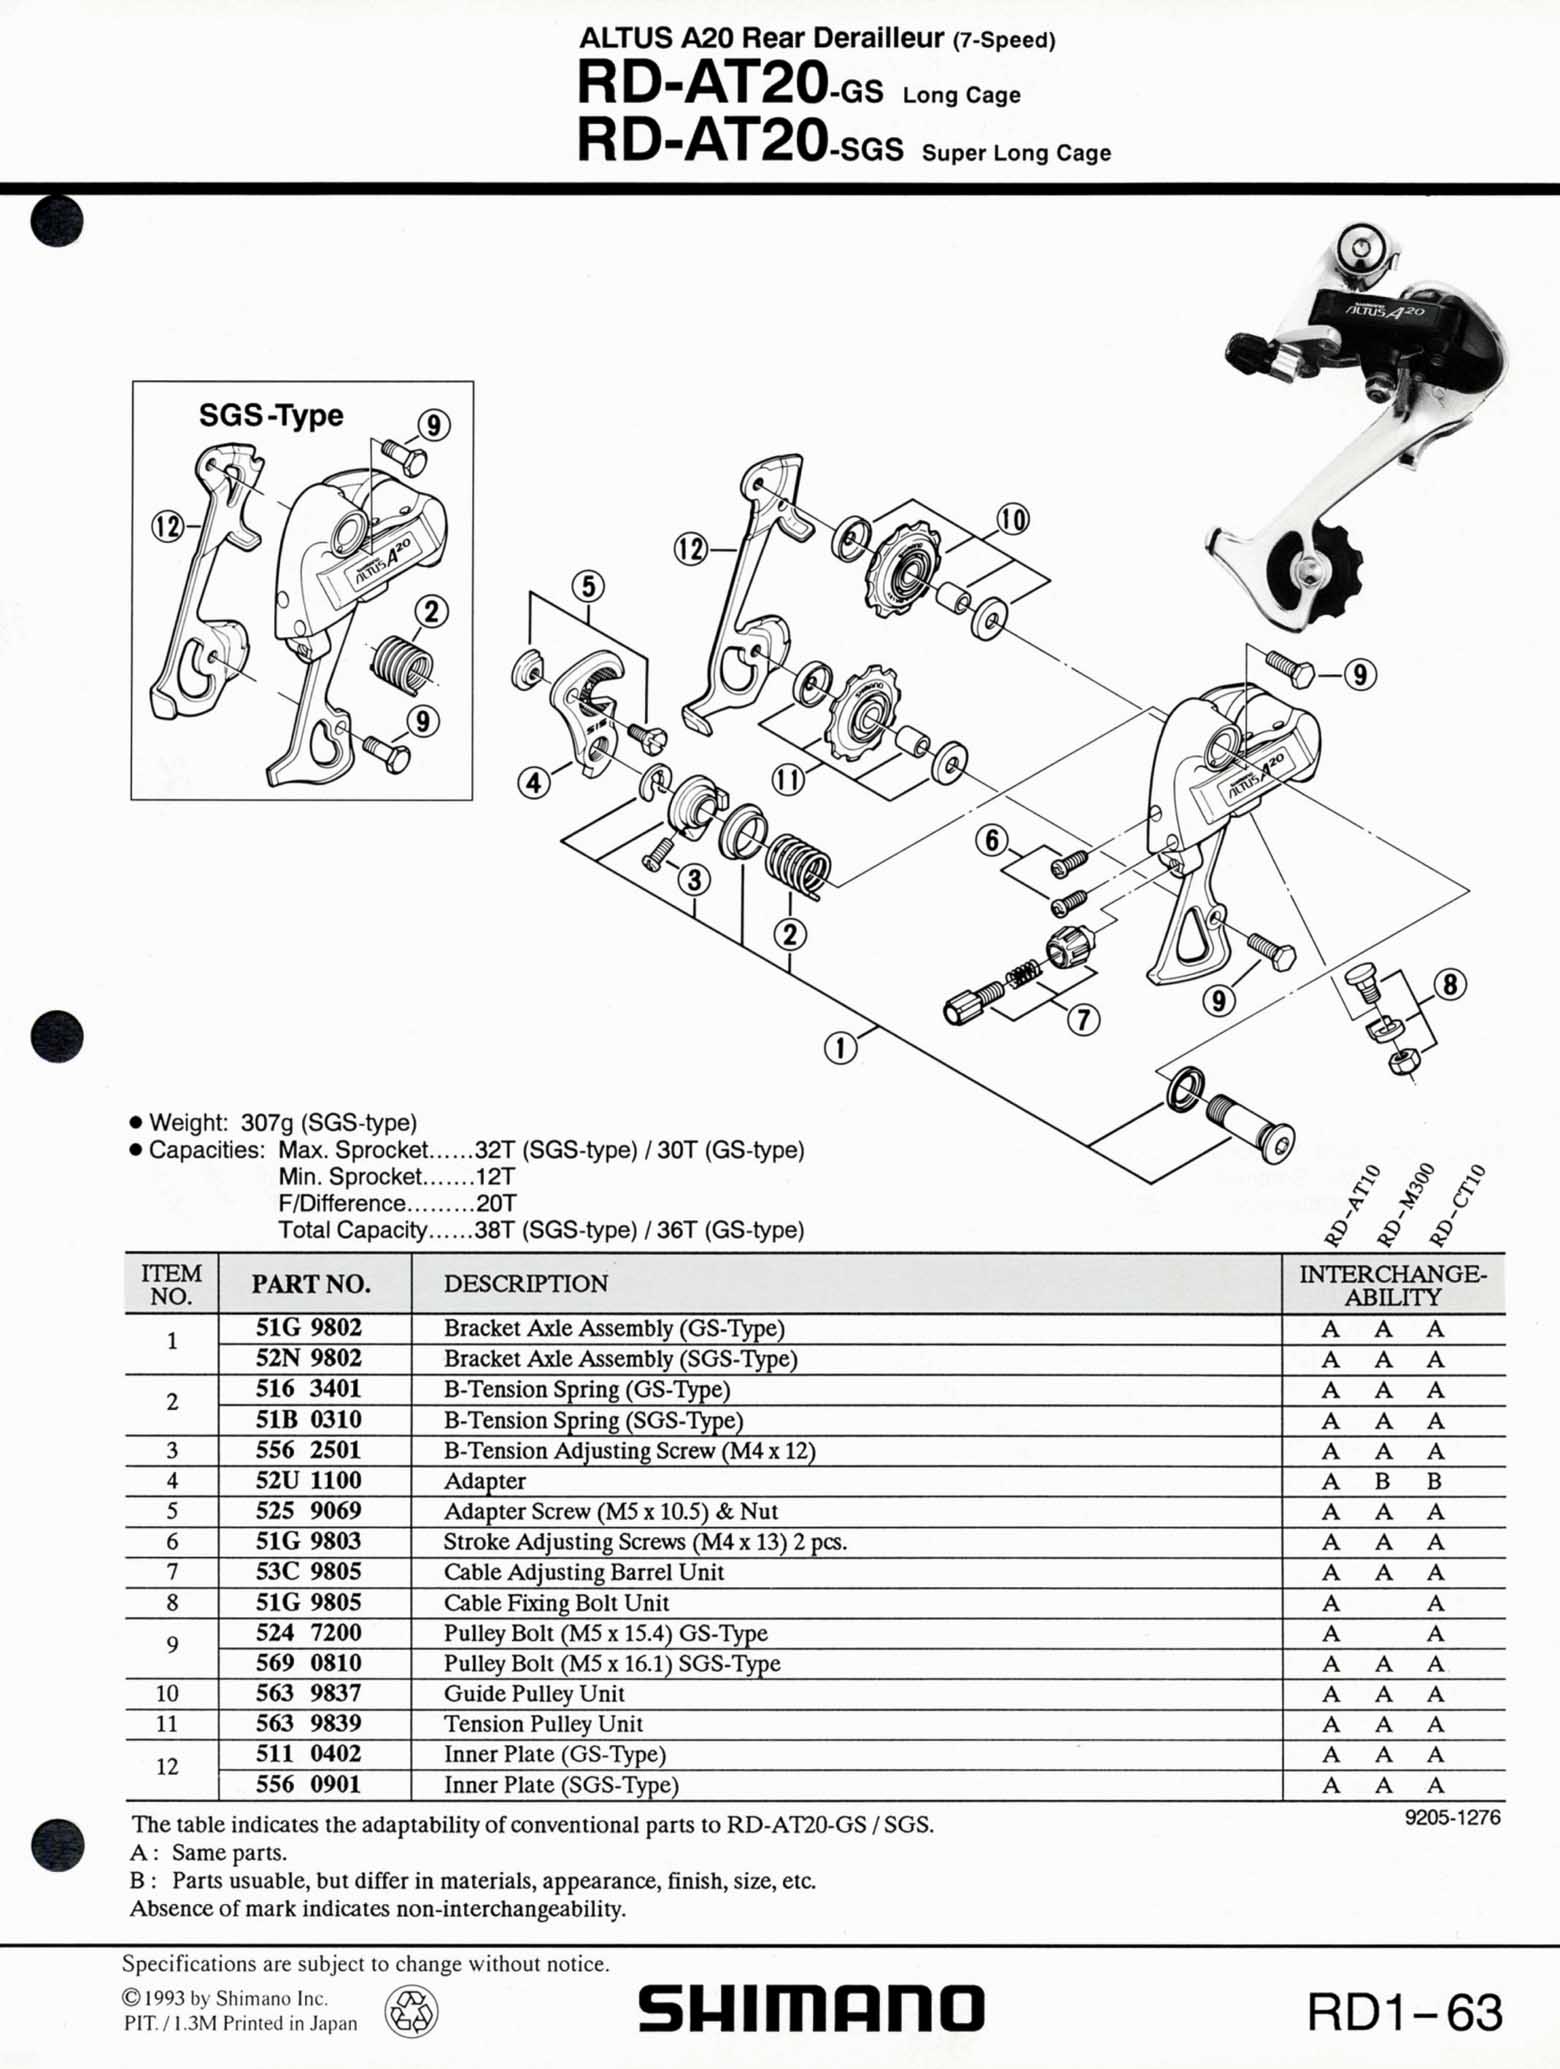 Shimano Bicycle Parts - 1993 scan 05 main image